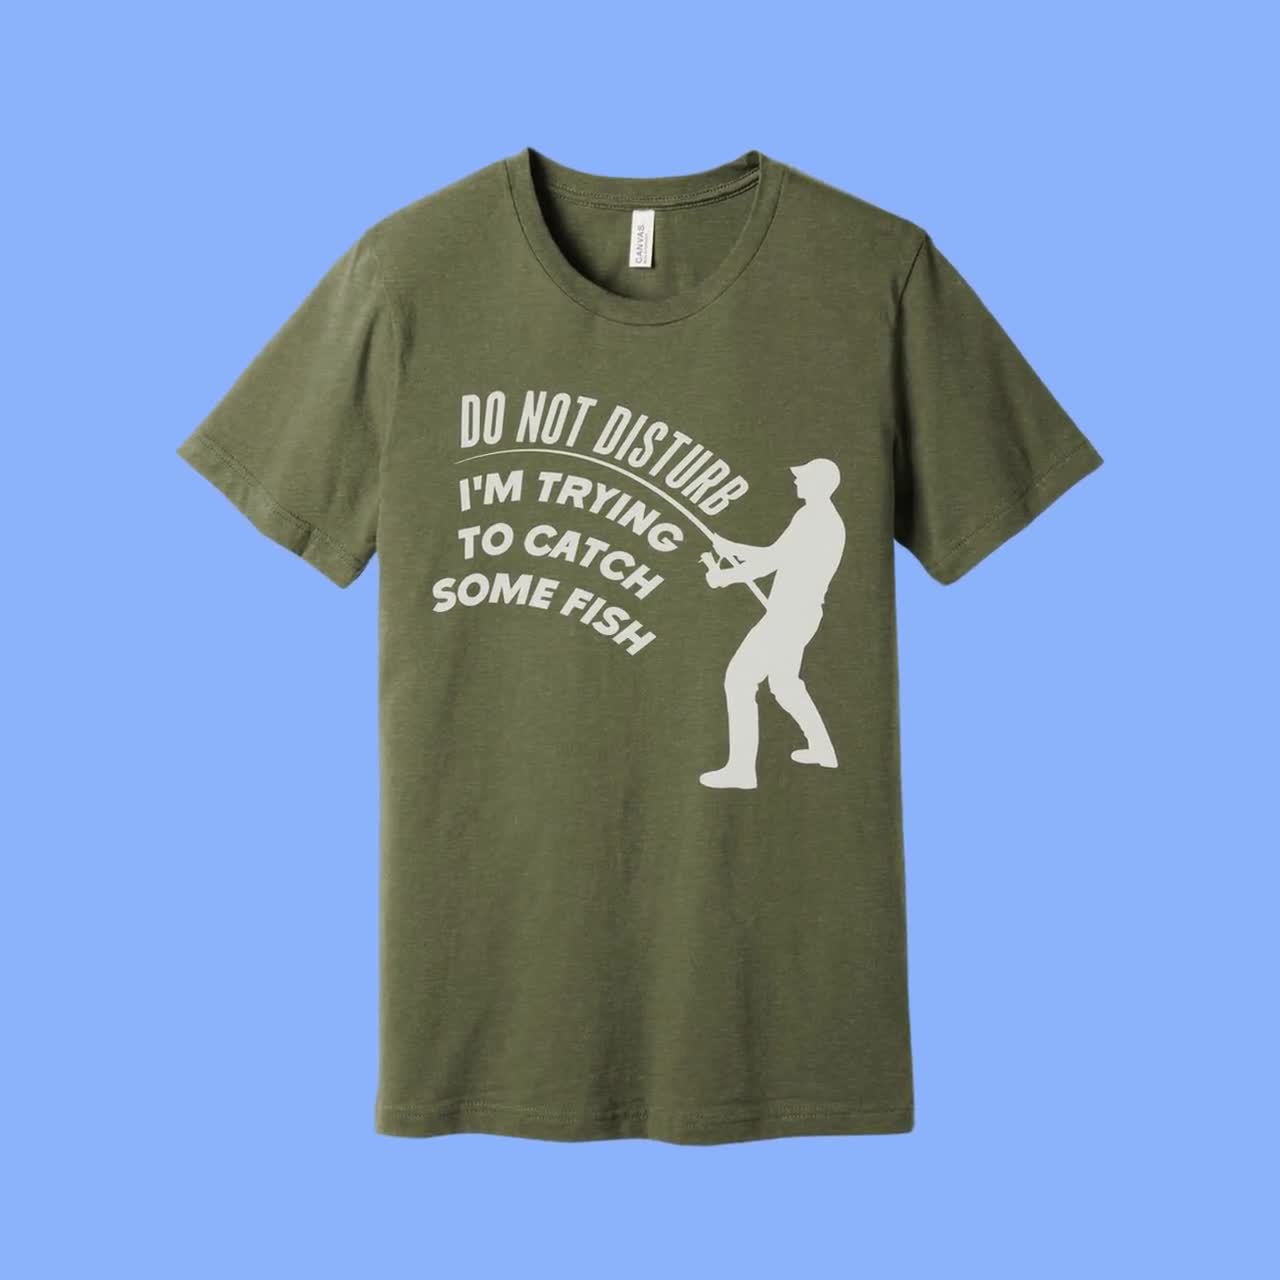 Humor Angling Shirt, Funny Fishing Gift, Fishing Dad Shirt, Angling Gift,  Fisherman Gift, Joke Fishing Gifts, Fishing Shirt, Angling T-shirt 